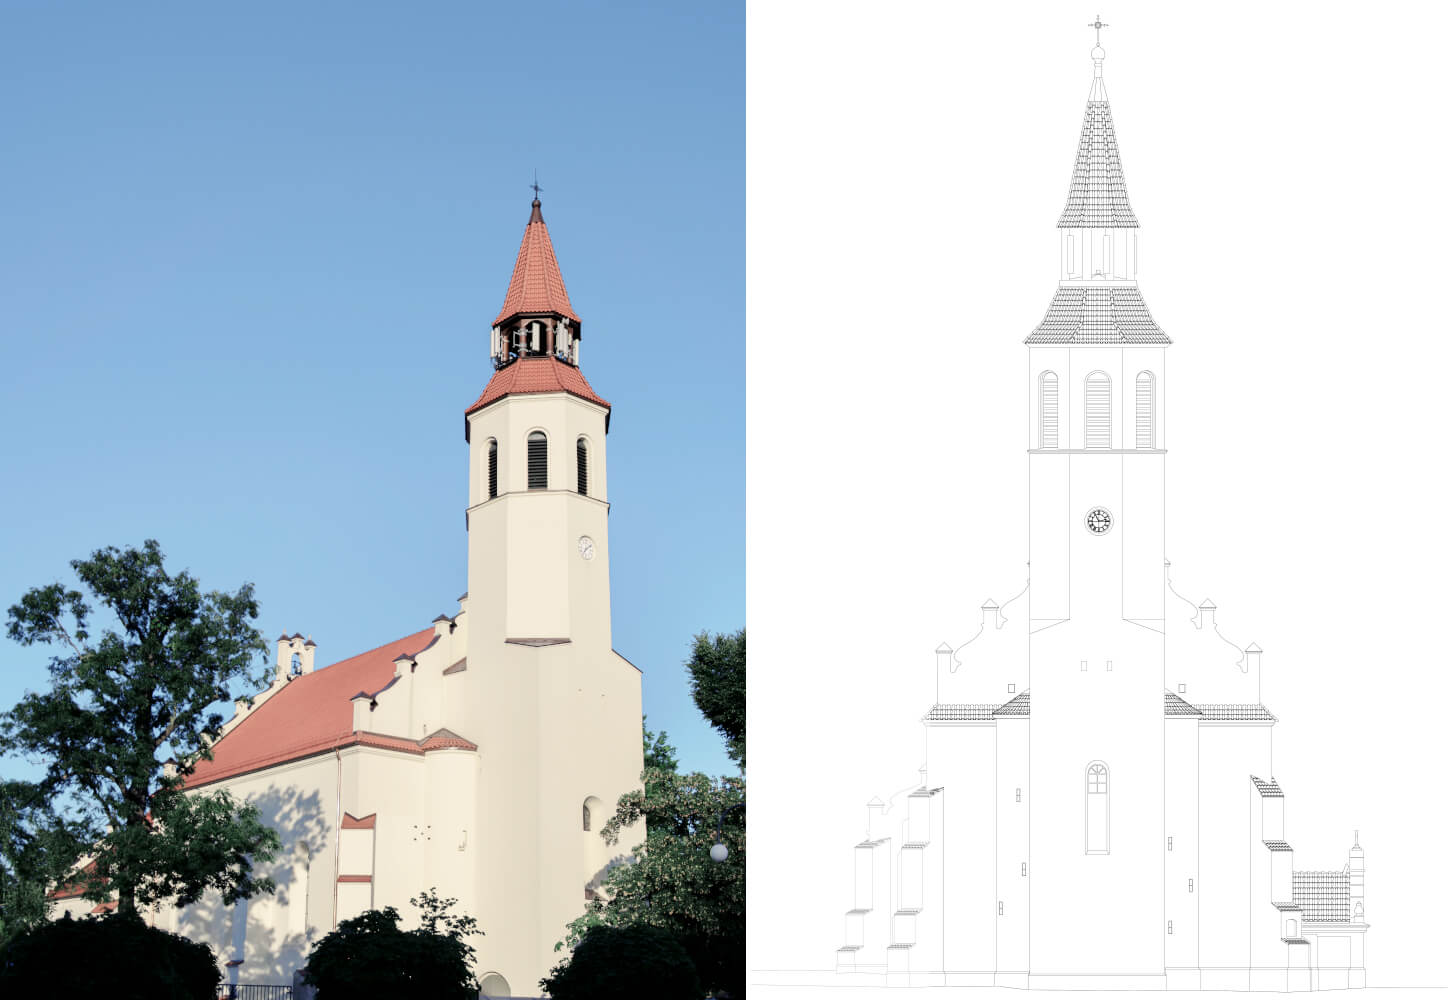 Biuro AR renowacja zabytkowego kościoła w Rzgowie projekt konserwatorski